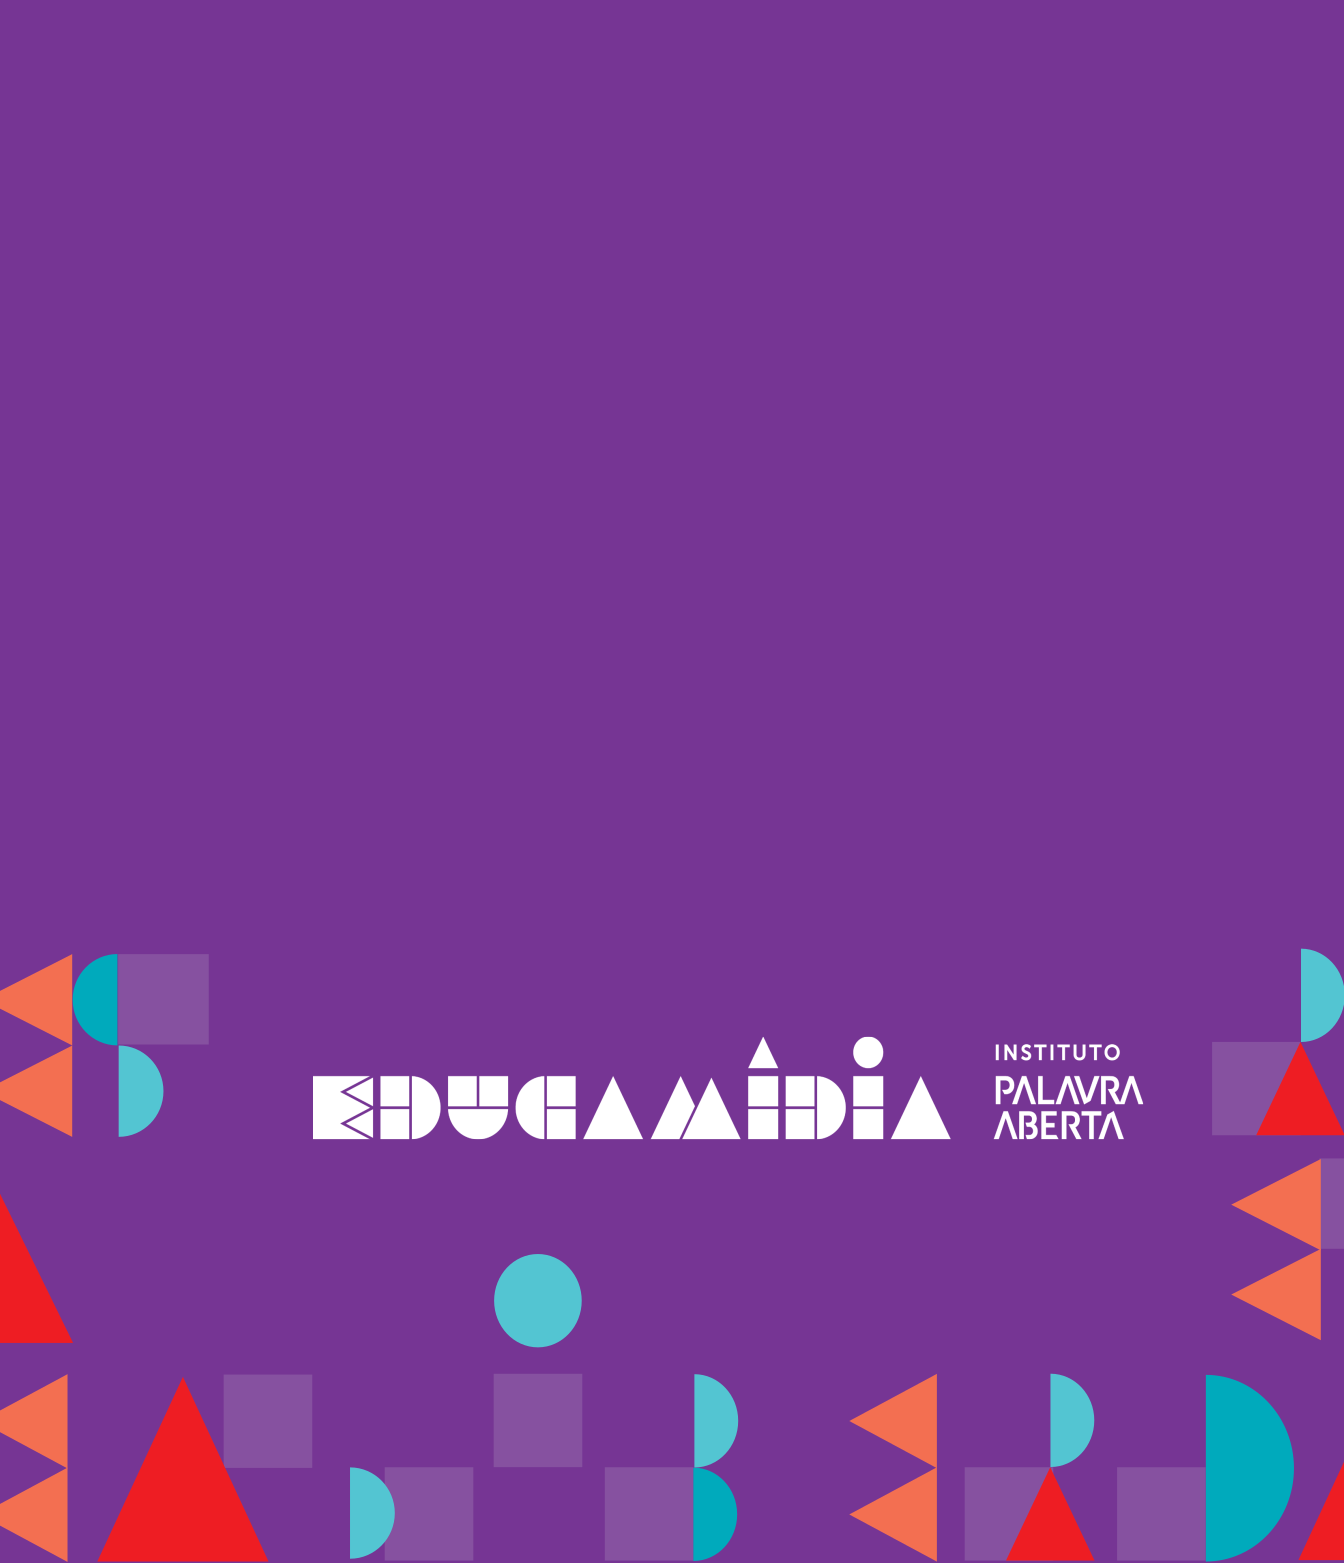 Banner-Tá-pronto-Celular-EducaMídia